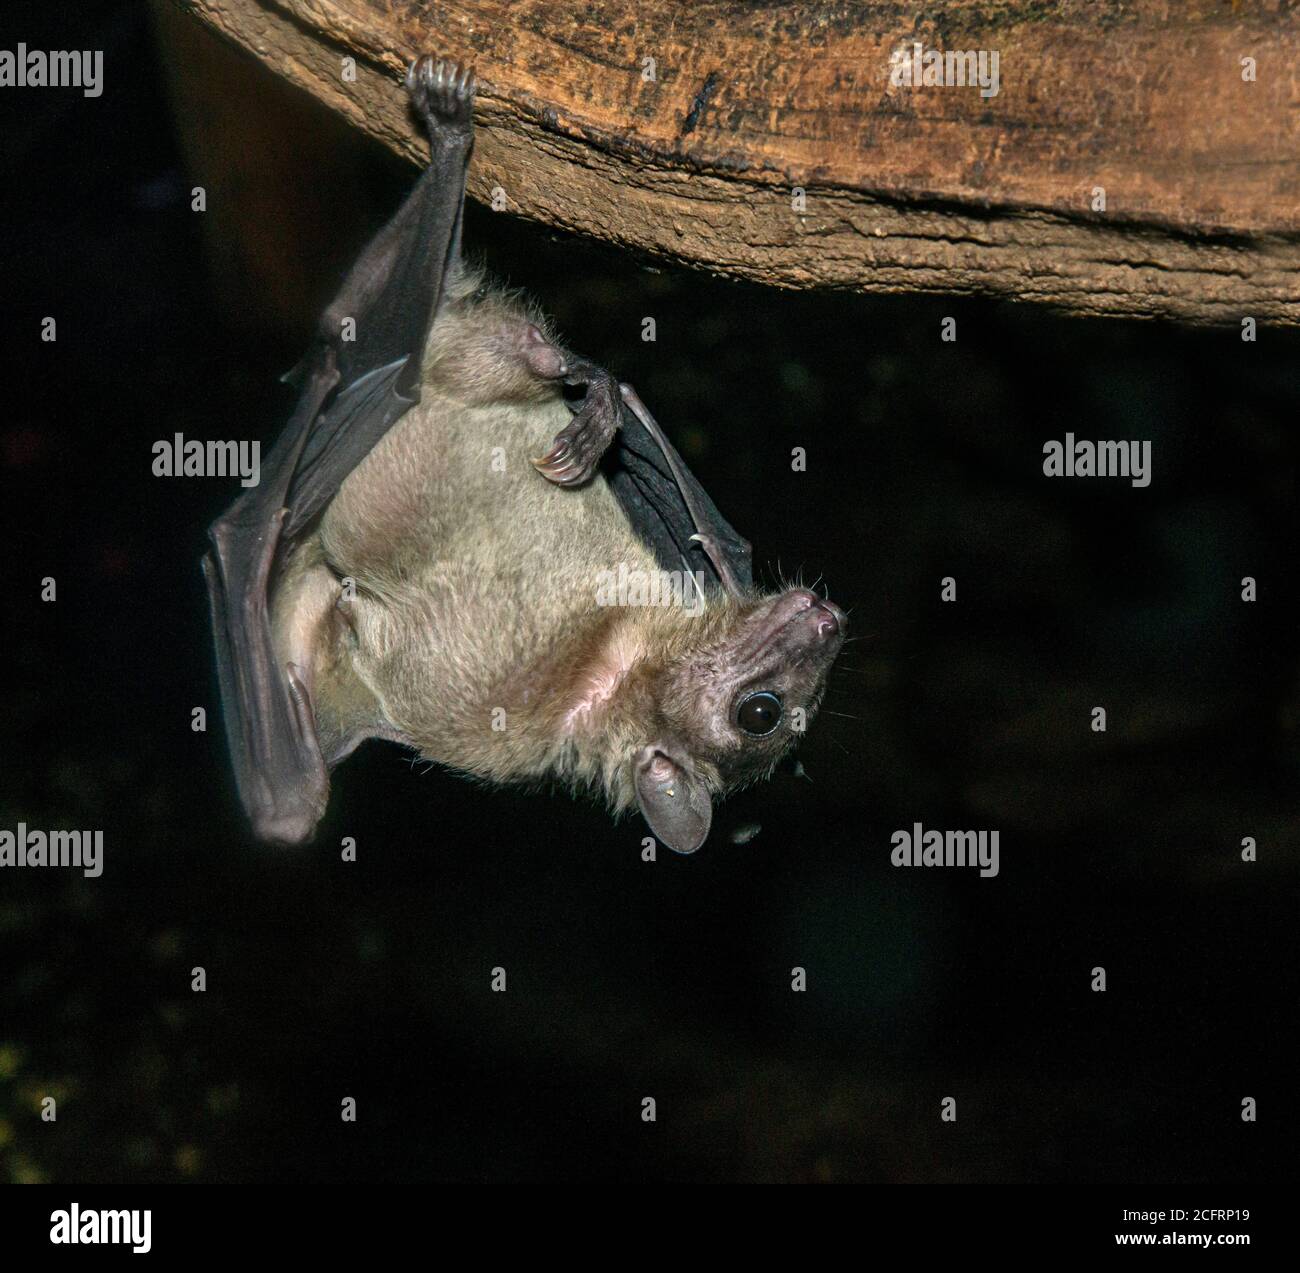 Egyptian Fruit Bat. Rousettus aegyptiacus. Captive specimen. Stock Photo